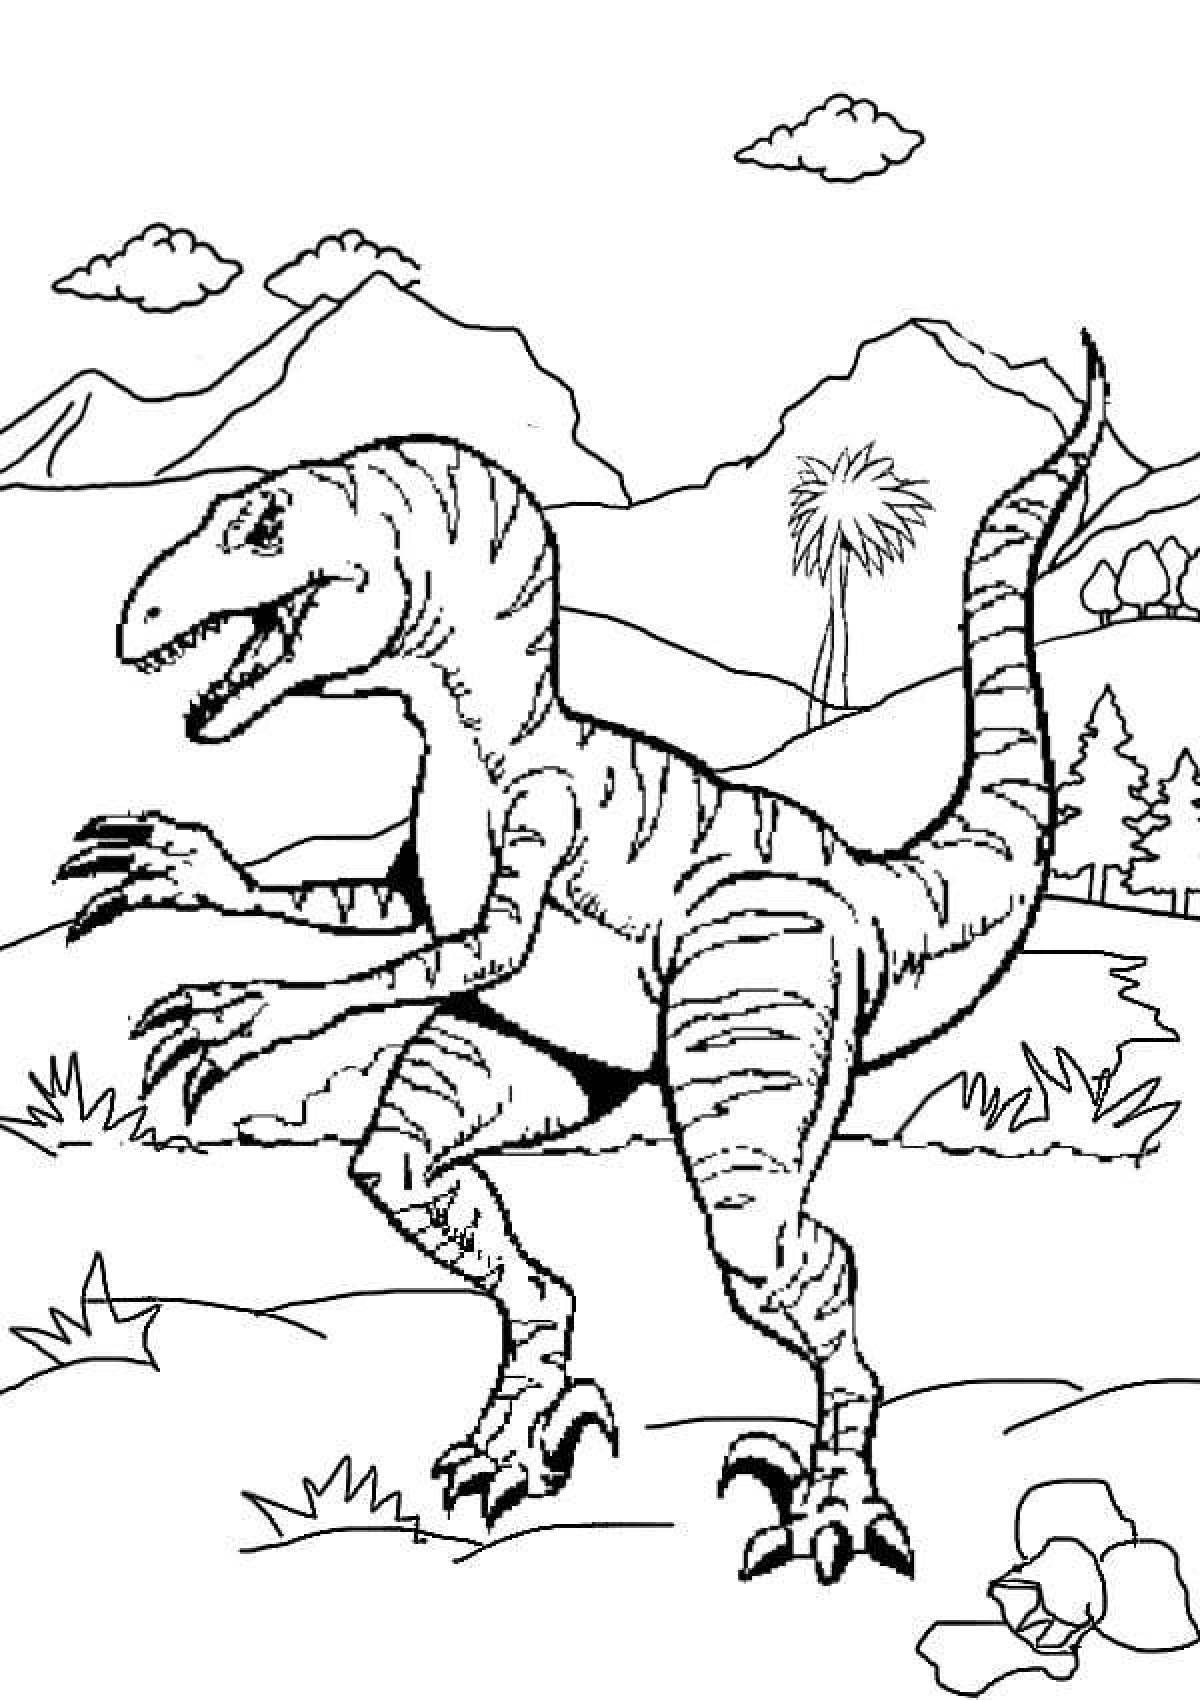 Impressive velociraptor coloring page